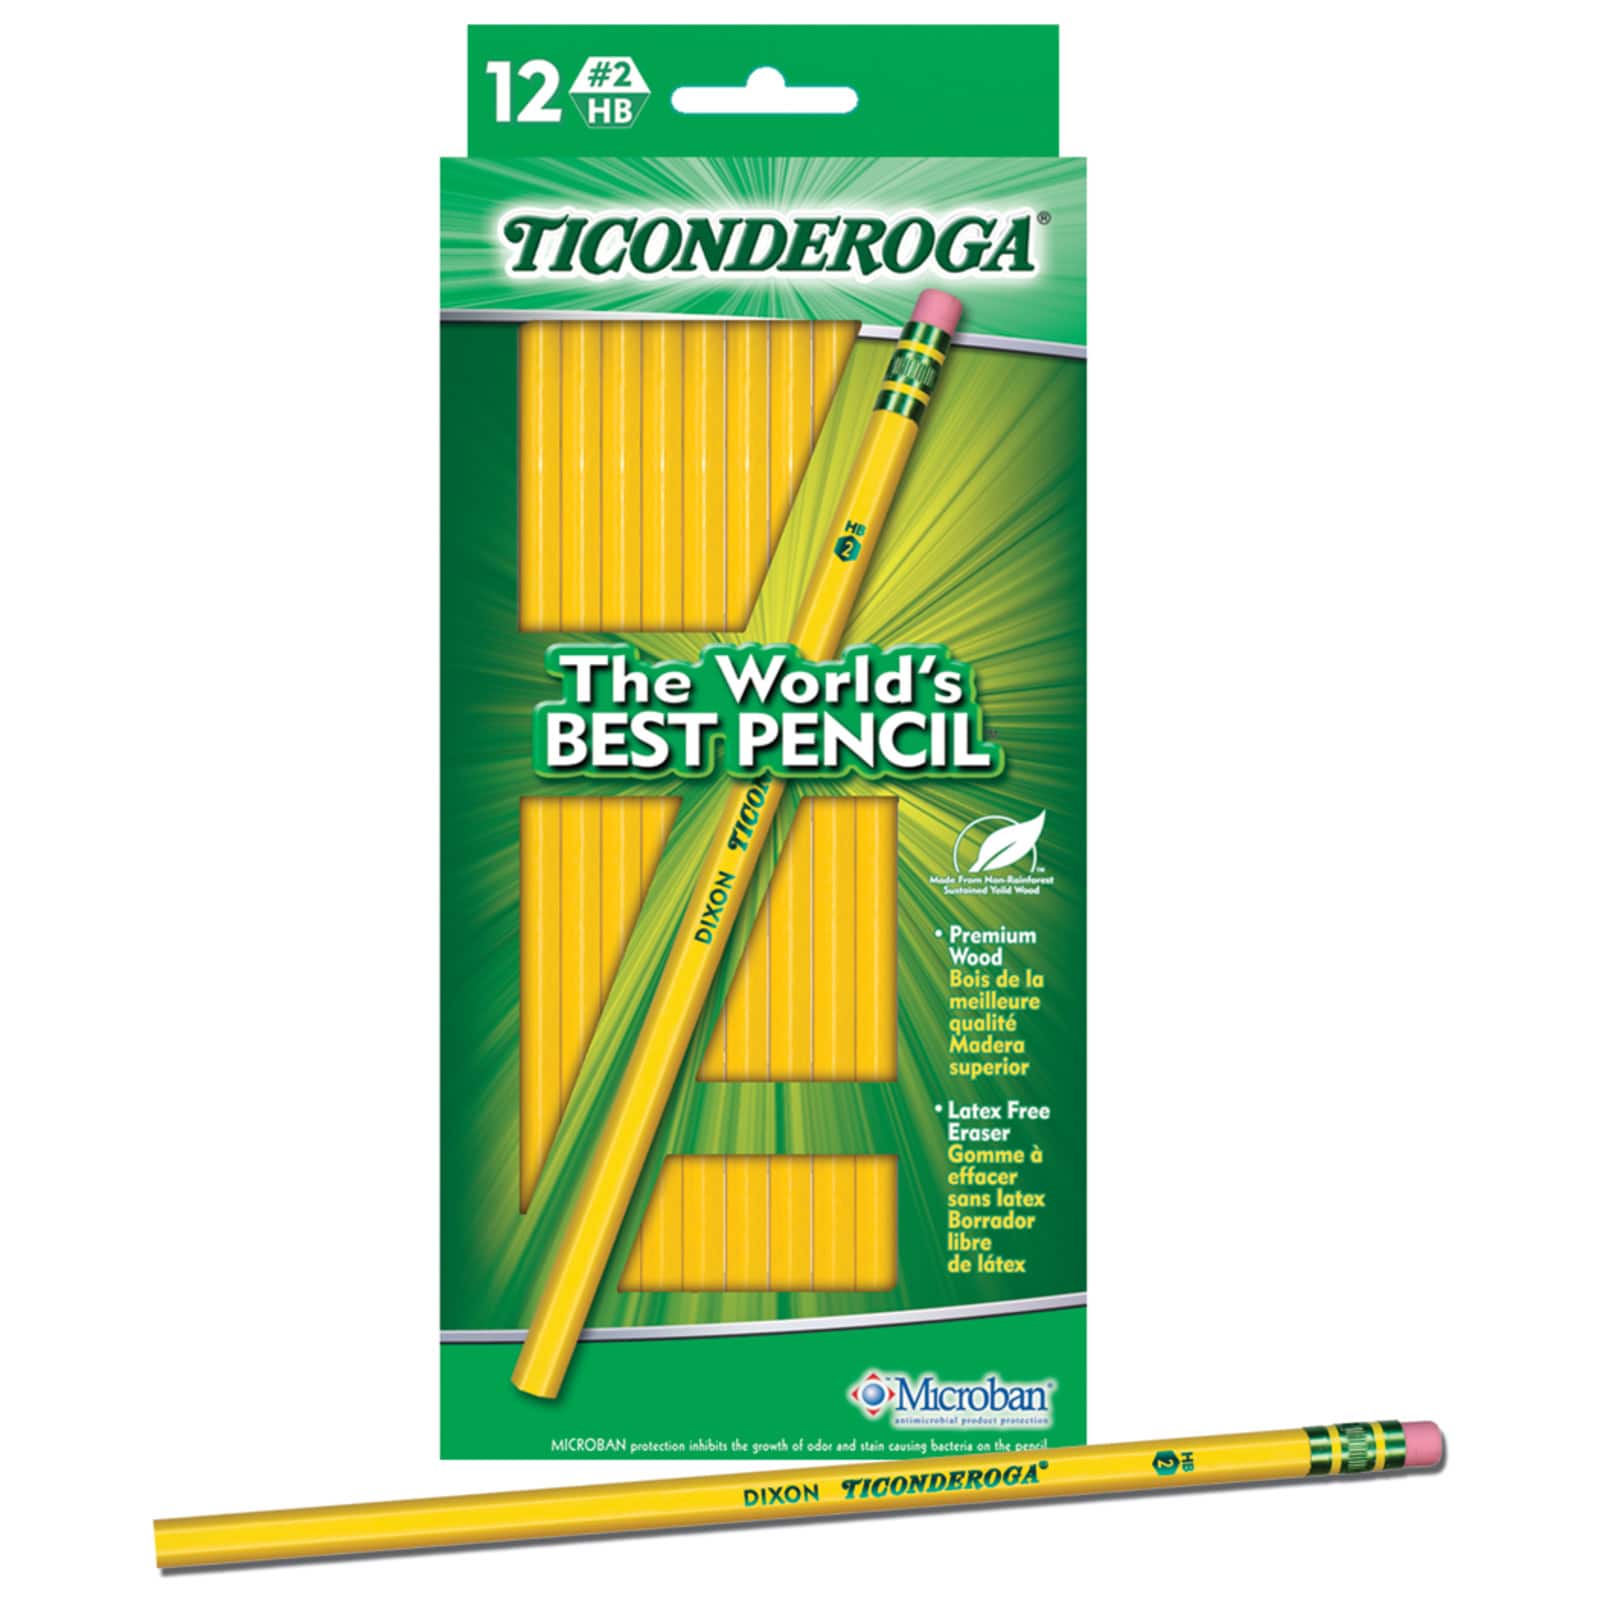 12 Art pencils grafit 2B – Jennvic